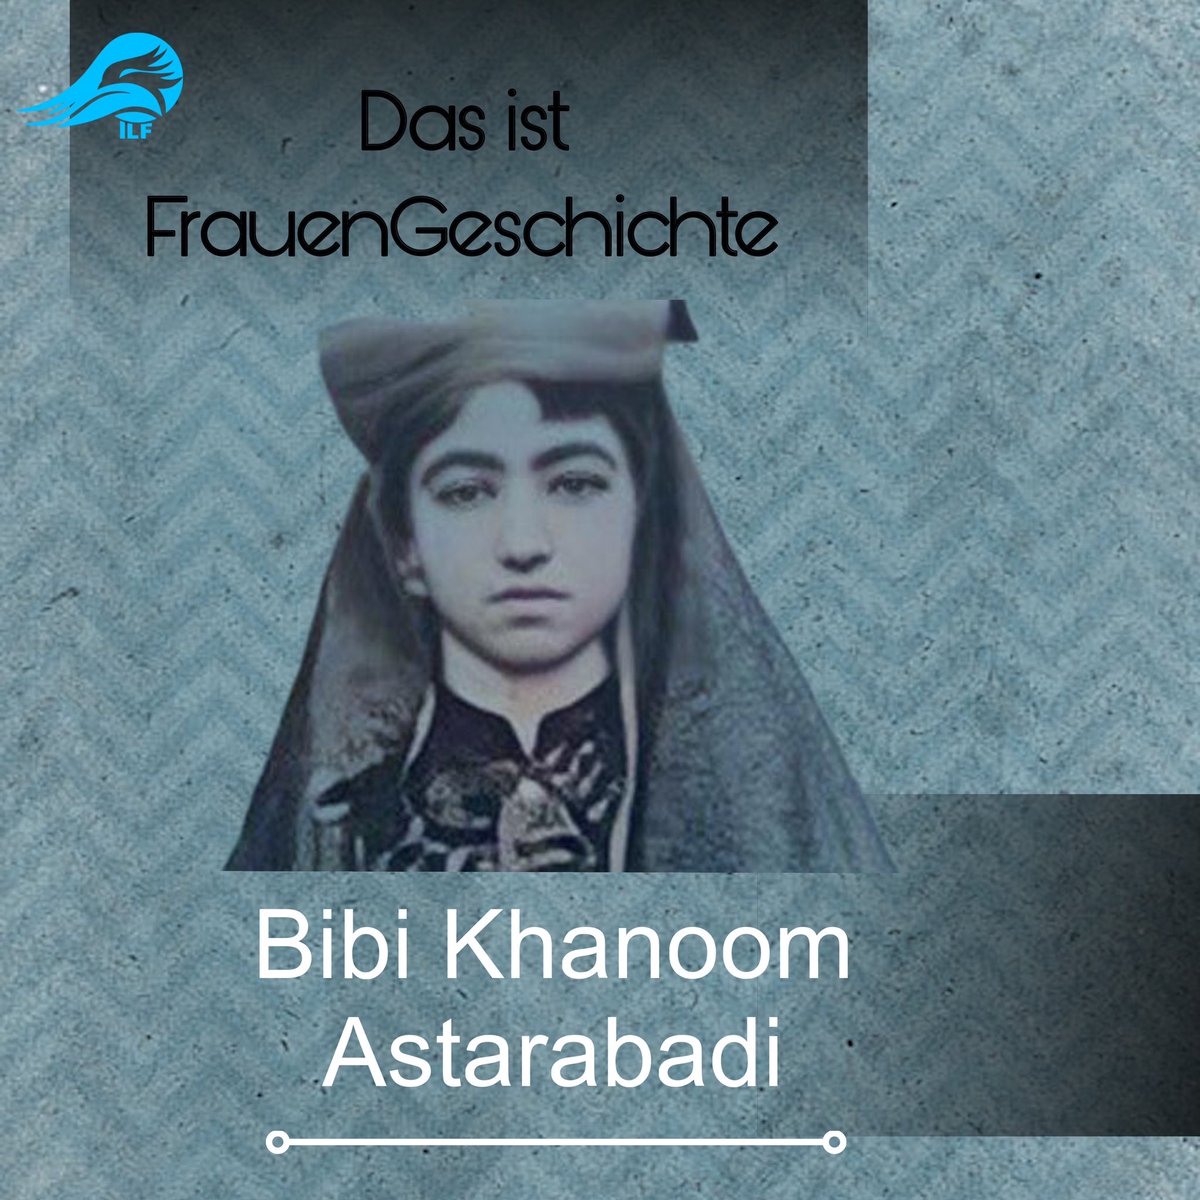 Bibi Khanum Astarabadi, eine herausragende Schriftstellerin und Satirikerin, zeichnete sich als Vorreiterin während der Ära der konstitutionellen Revolution um 1900  im #Iran aus. Als erste #Frau, die Artikel in ausgewählten Zeitschriften veröffentlichte, und als Gründerin der